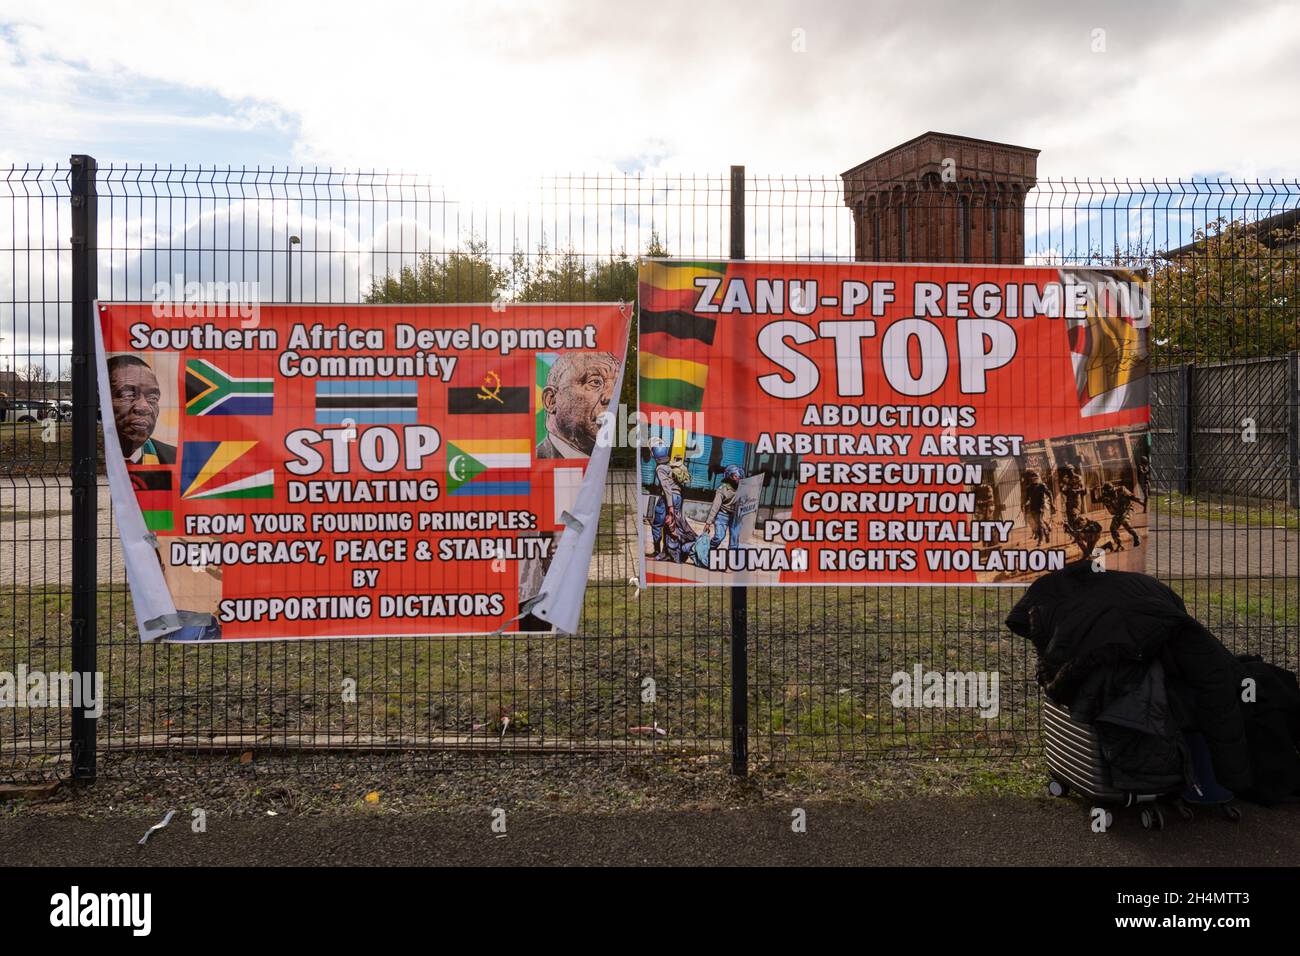 ZANU-PF Regime STOPPT Entführungen willkürliche Verhaftung Verfolgung Korruption Polizeibrutalität und Menschenrechtsverletzungen unterschreiben bei COP26, Glasgow, Schottland Großbritannien Stockfoto